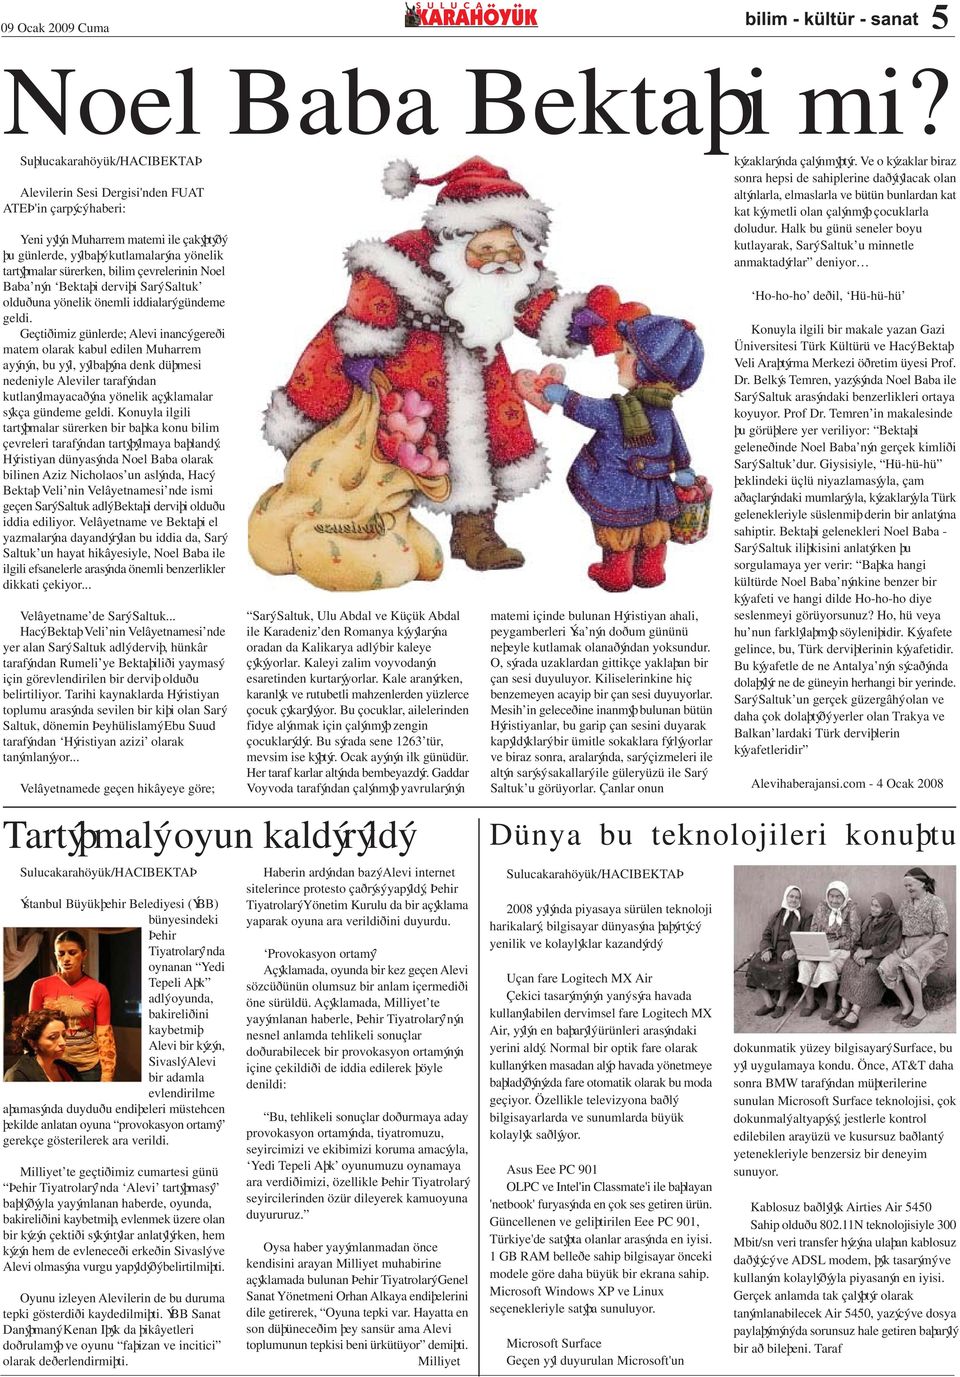 çevrelerinin Noel Baba nýn Bektaþi derviþi Sarý Saltuk olduðuna yönelik önemli iddialarý gündeme geldi.